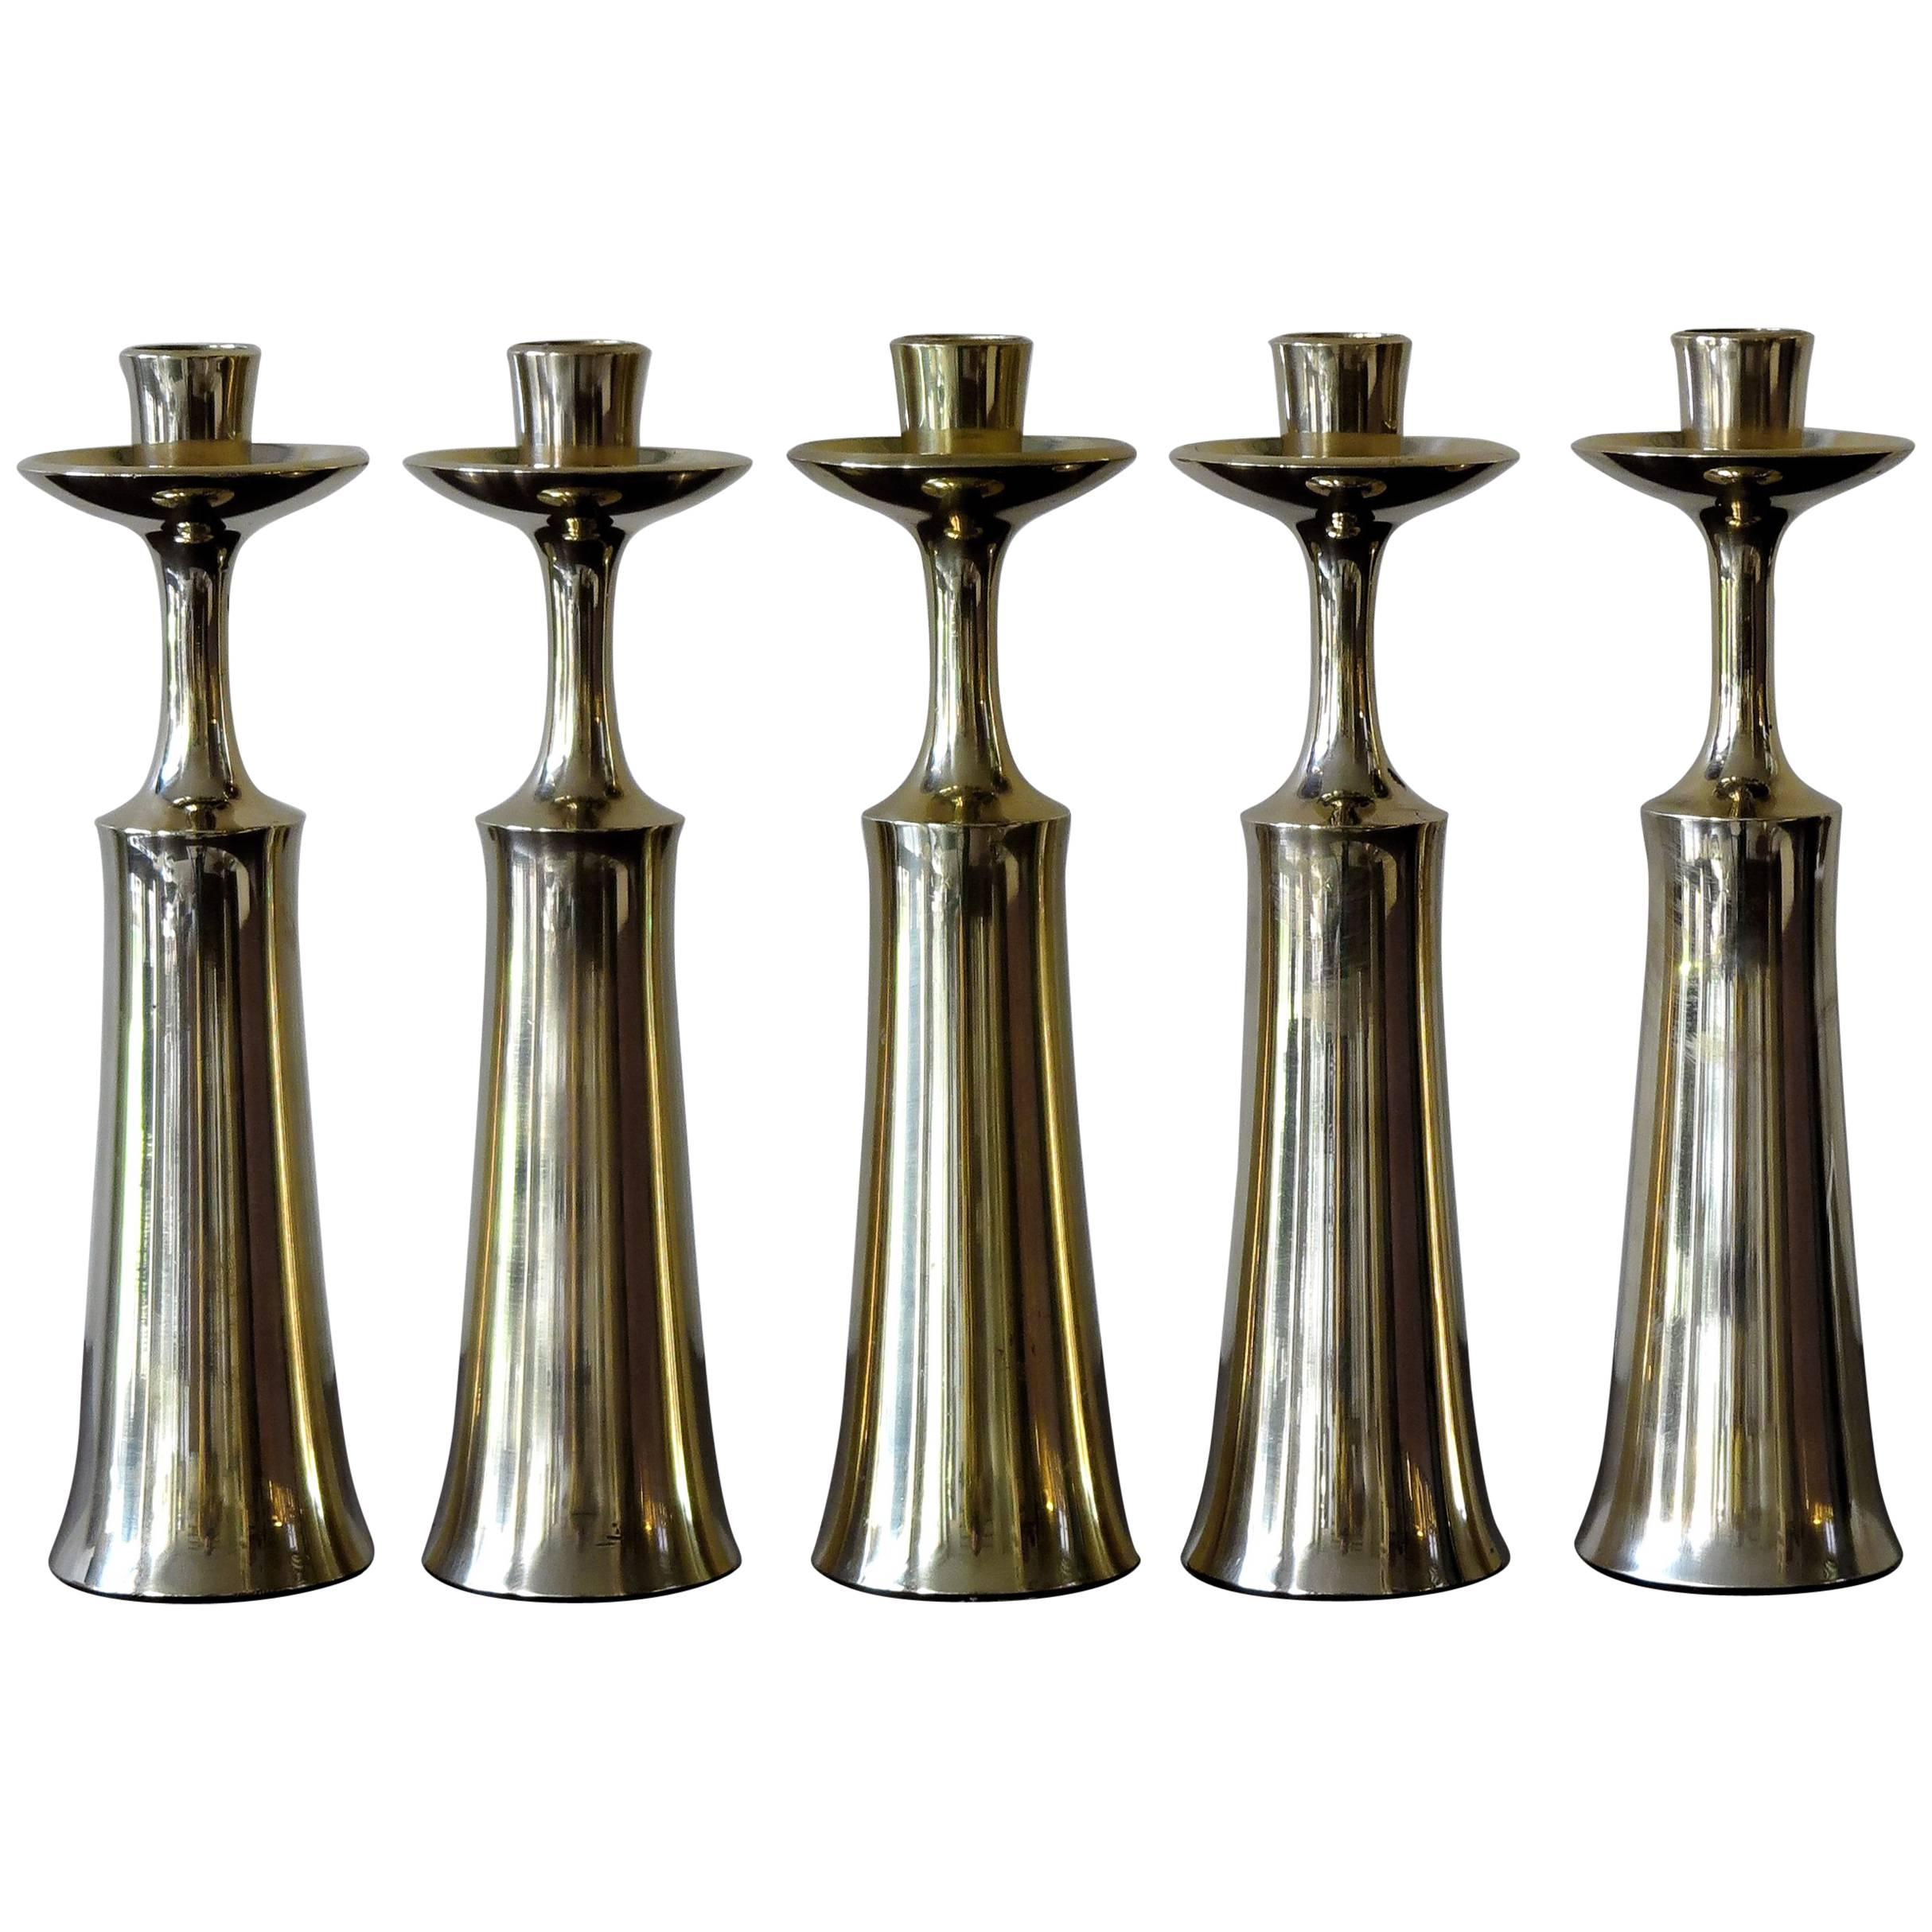 1950s Jens Harald Quistgaard Scandinavian Brass Candlesticks for Dansk Design